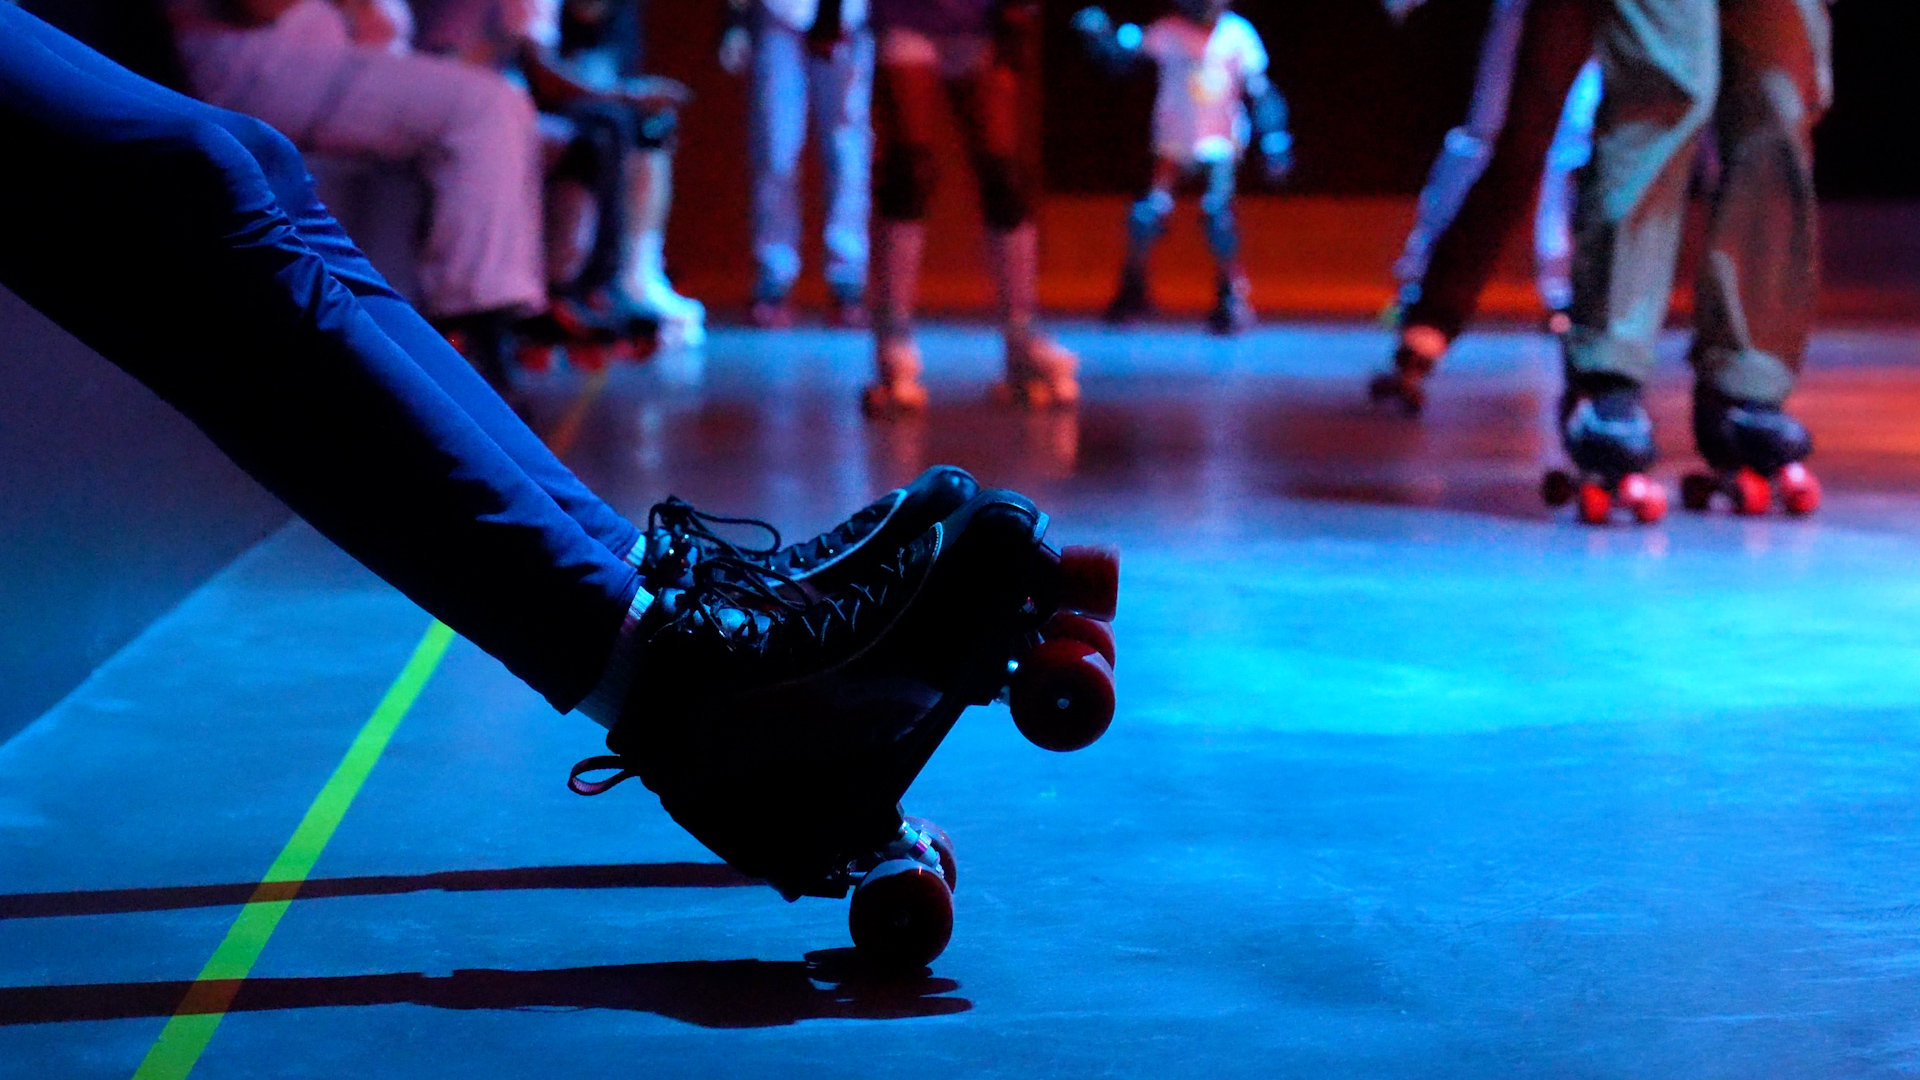 Le Liberty Roller Rink accueille patineurs et danseurs sur ses pistes, dans une ambiance disco digne des années 80.